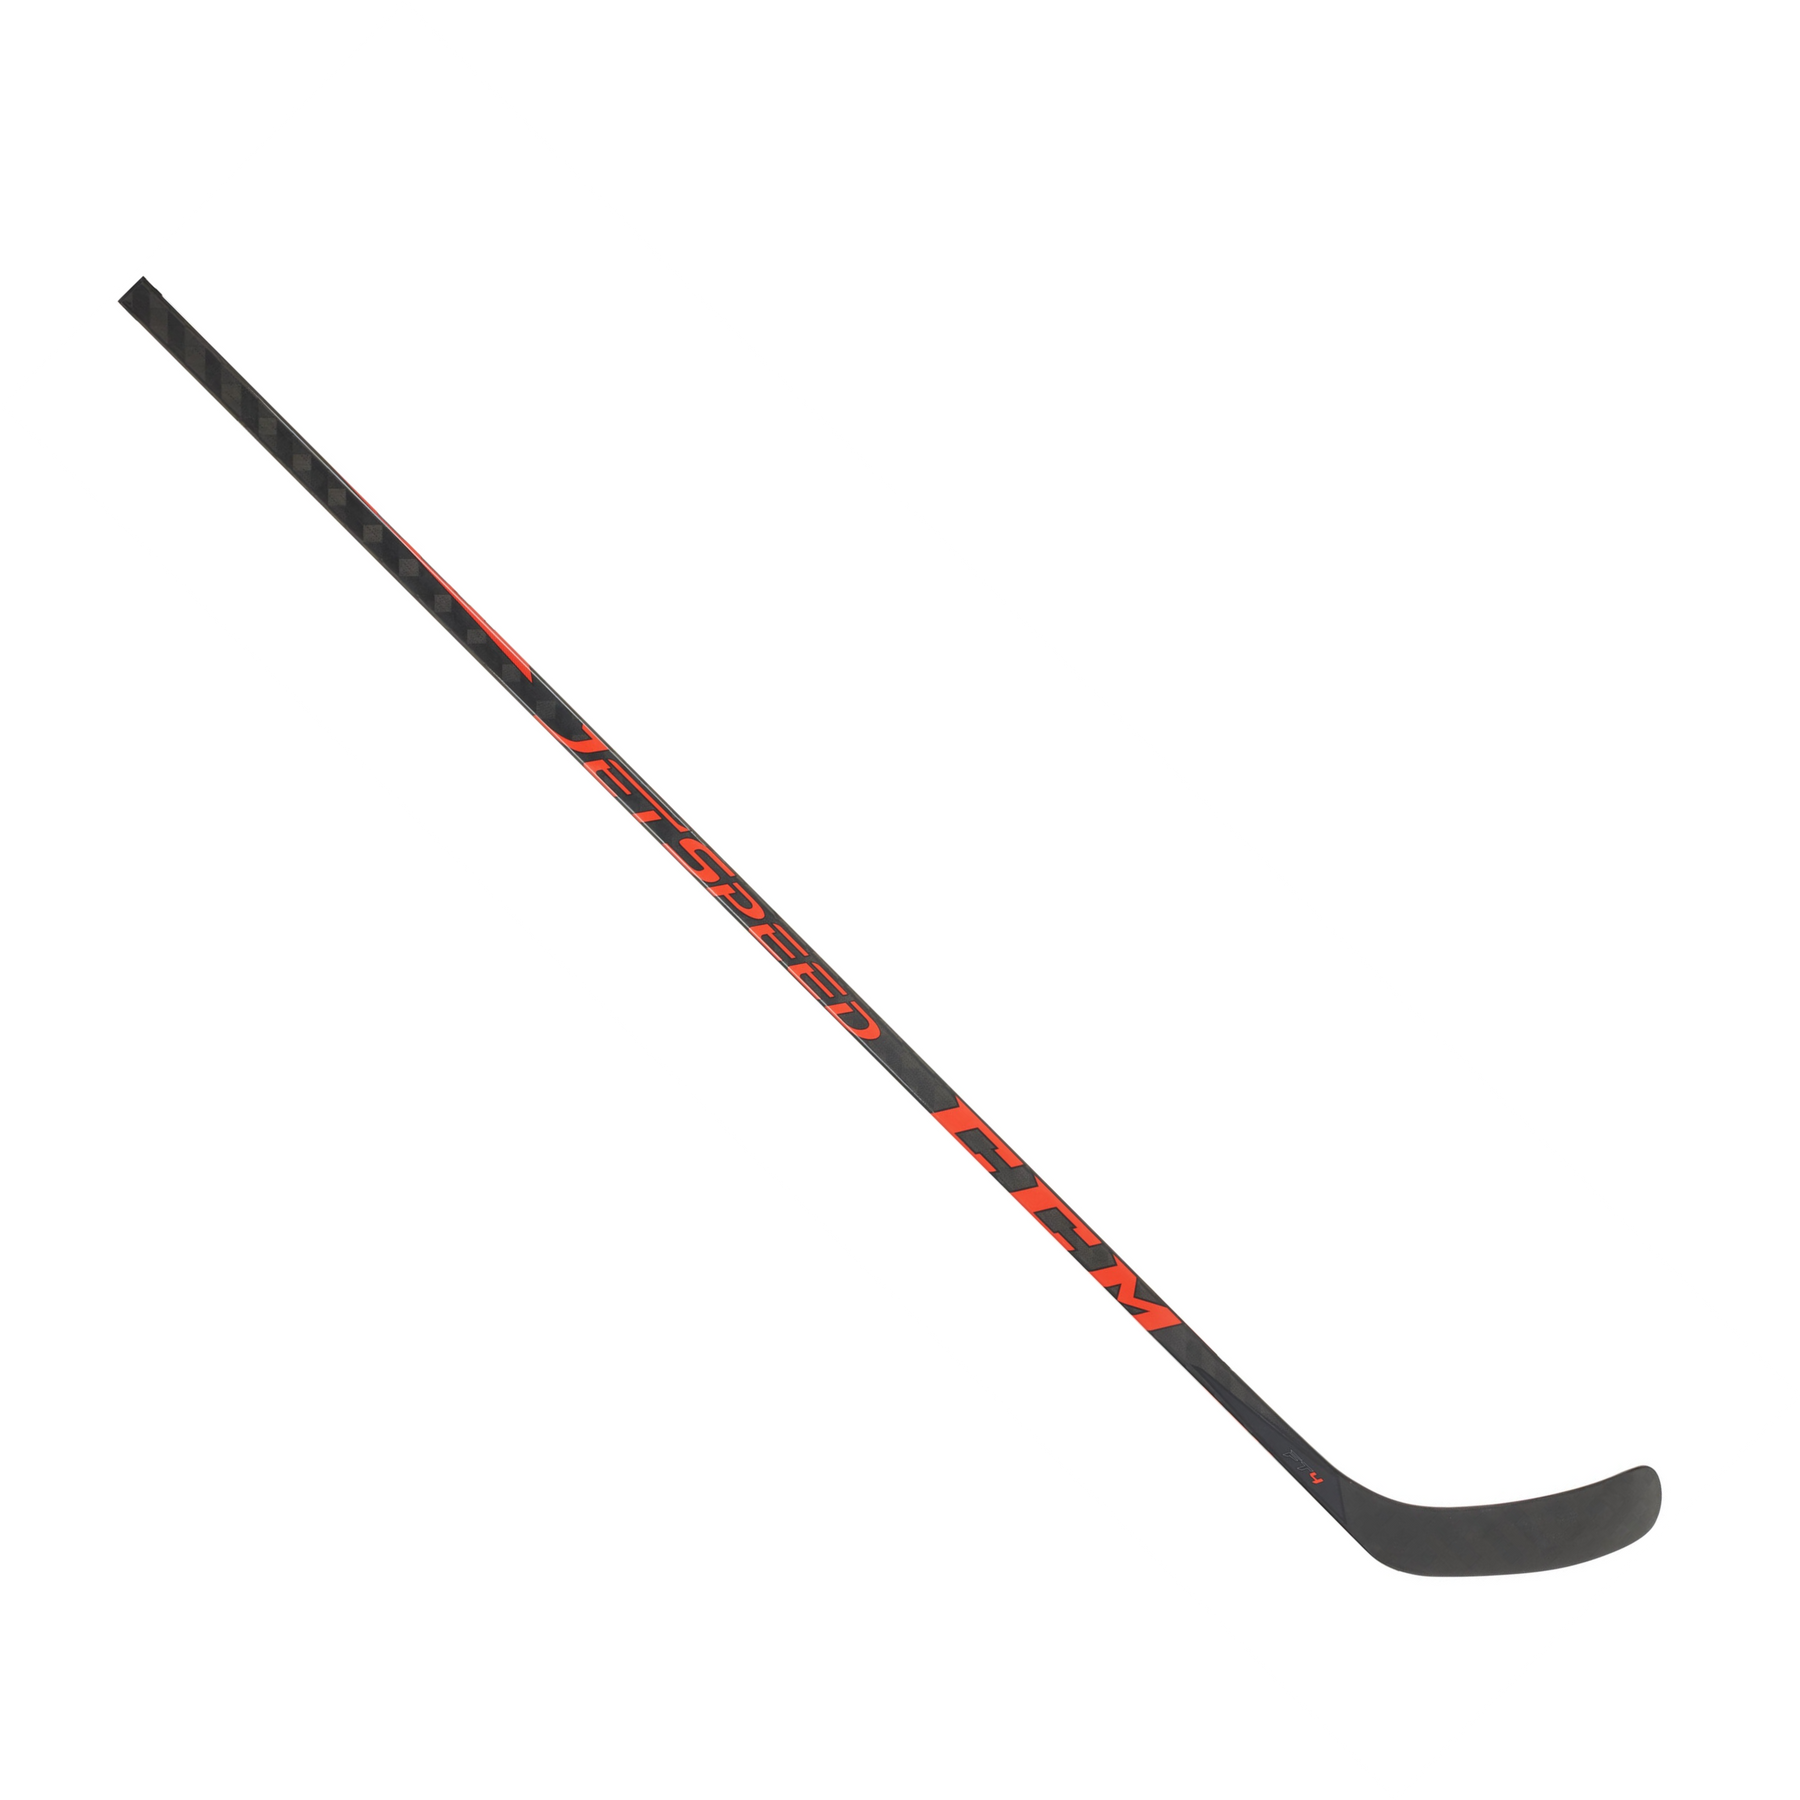 CCM JetSpeed FT4 Senior Hockey Stick